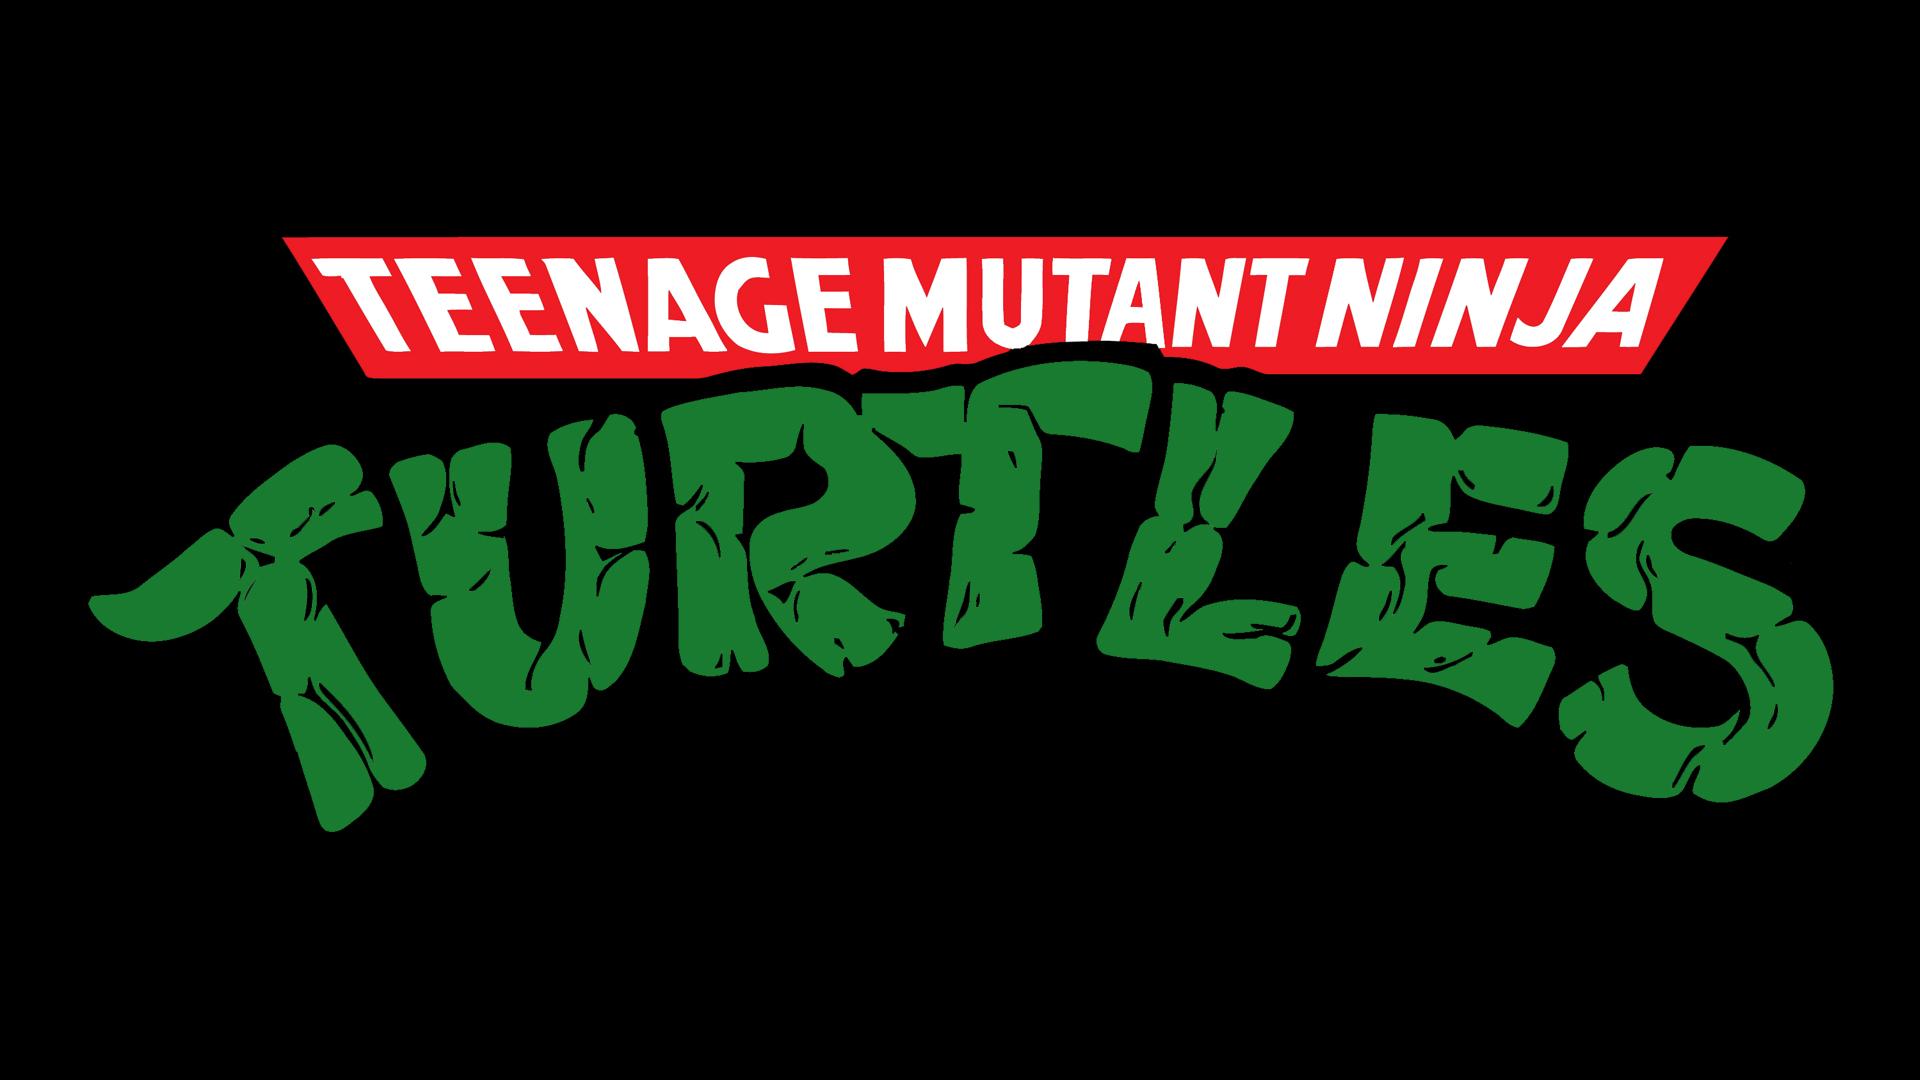 Teenage Mutant Ninja Turtles Logo wallpaperx1080